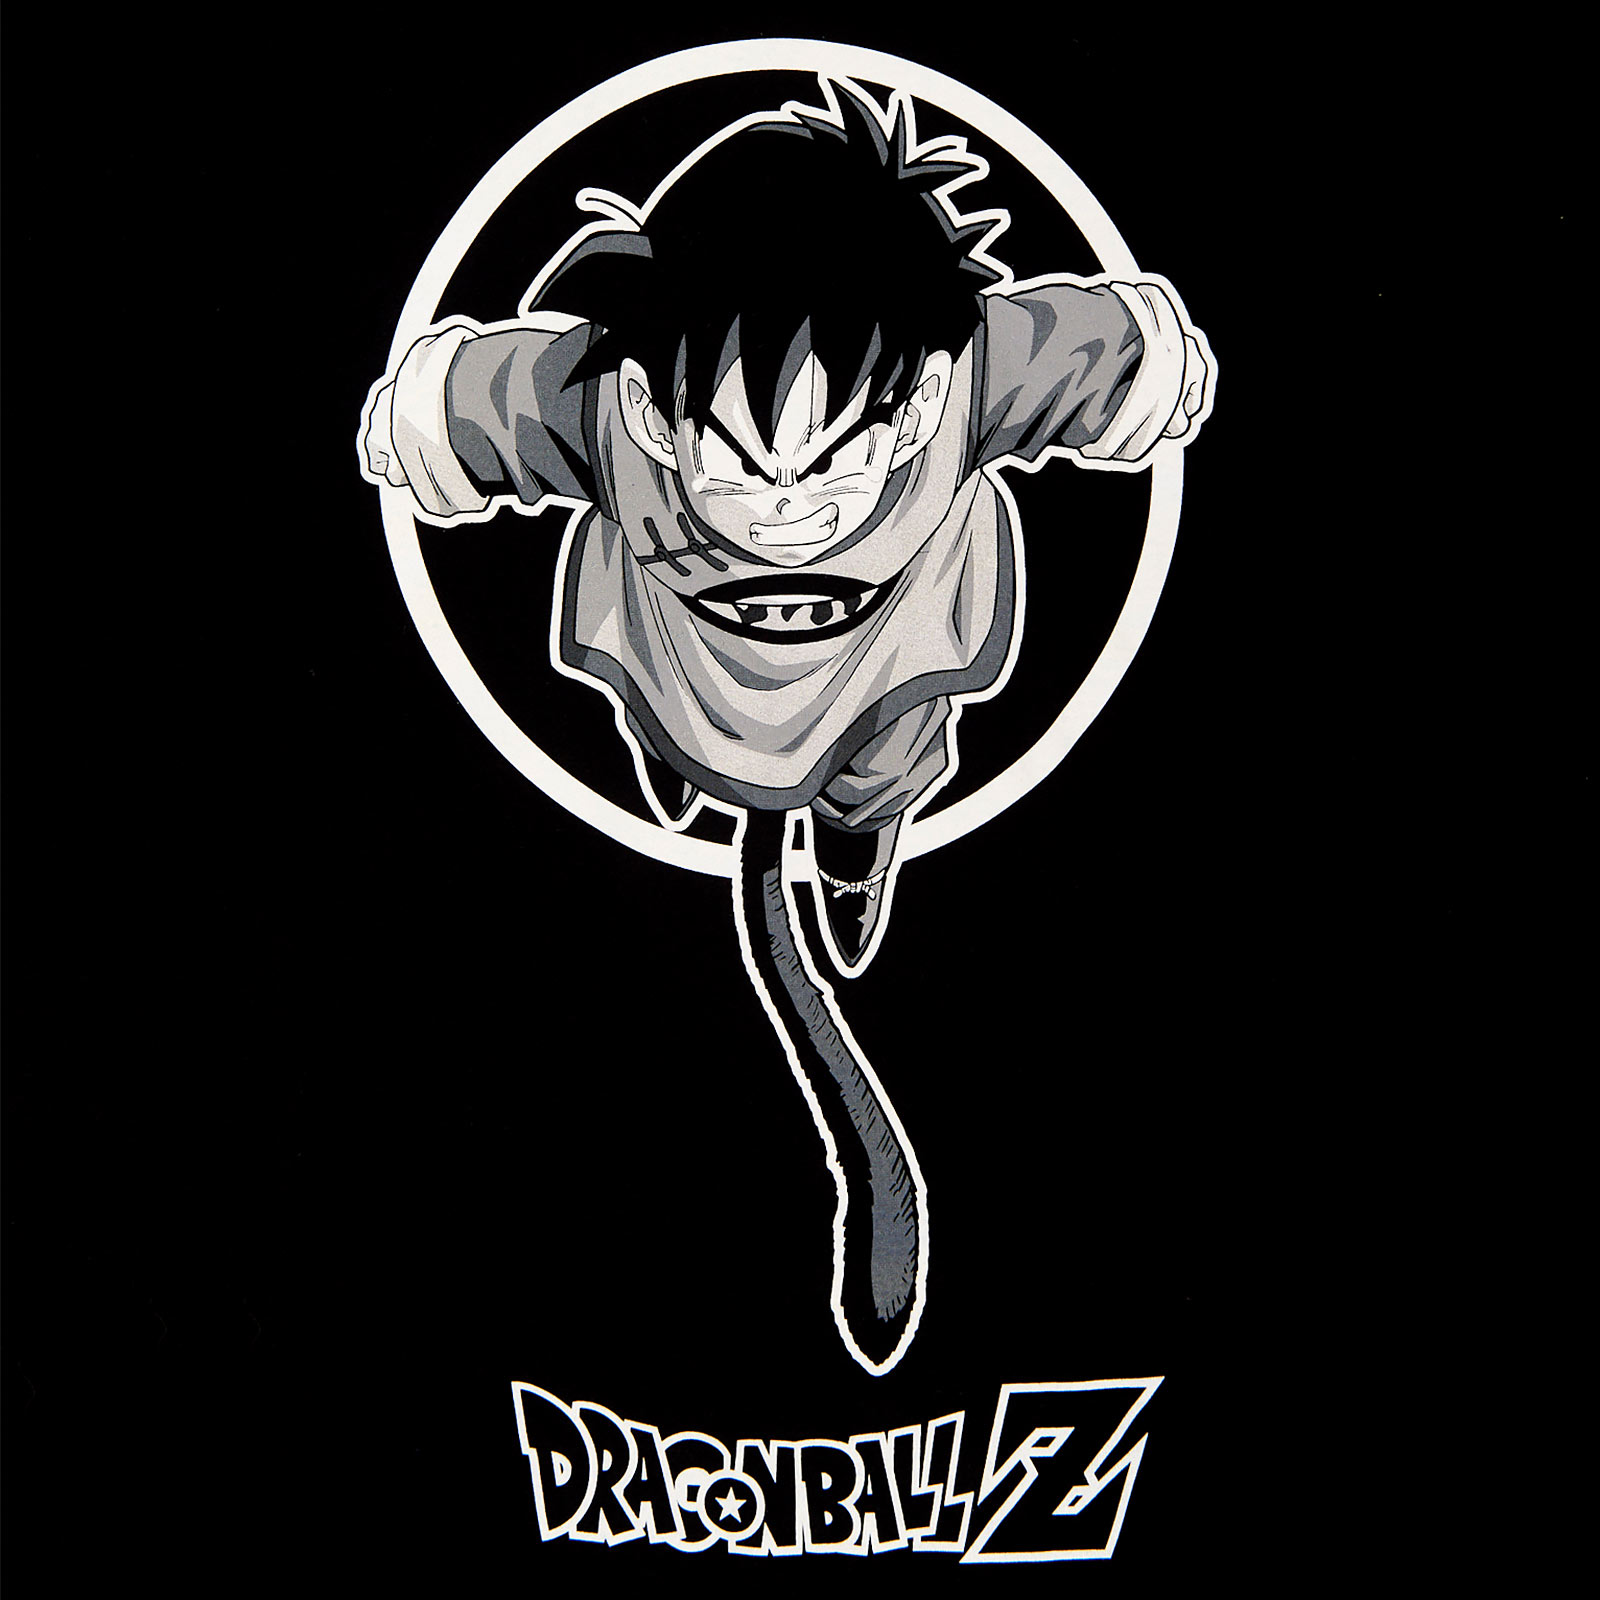 Dragon Ball Z - T-shirt Gohan Jump noir